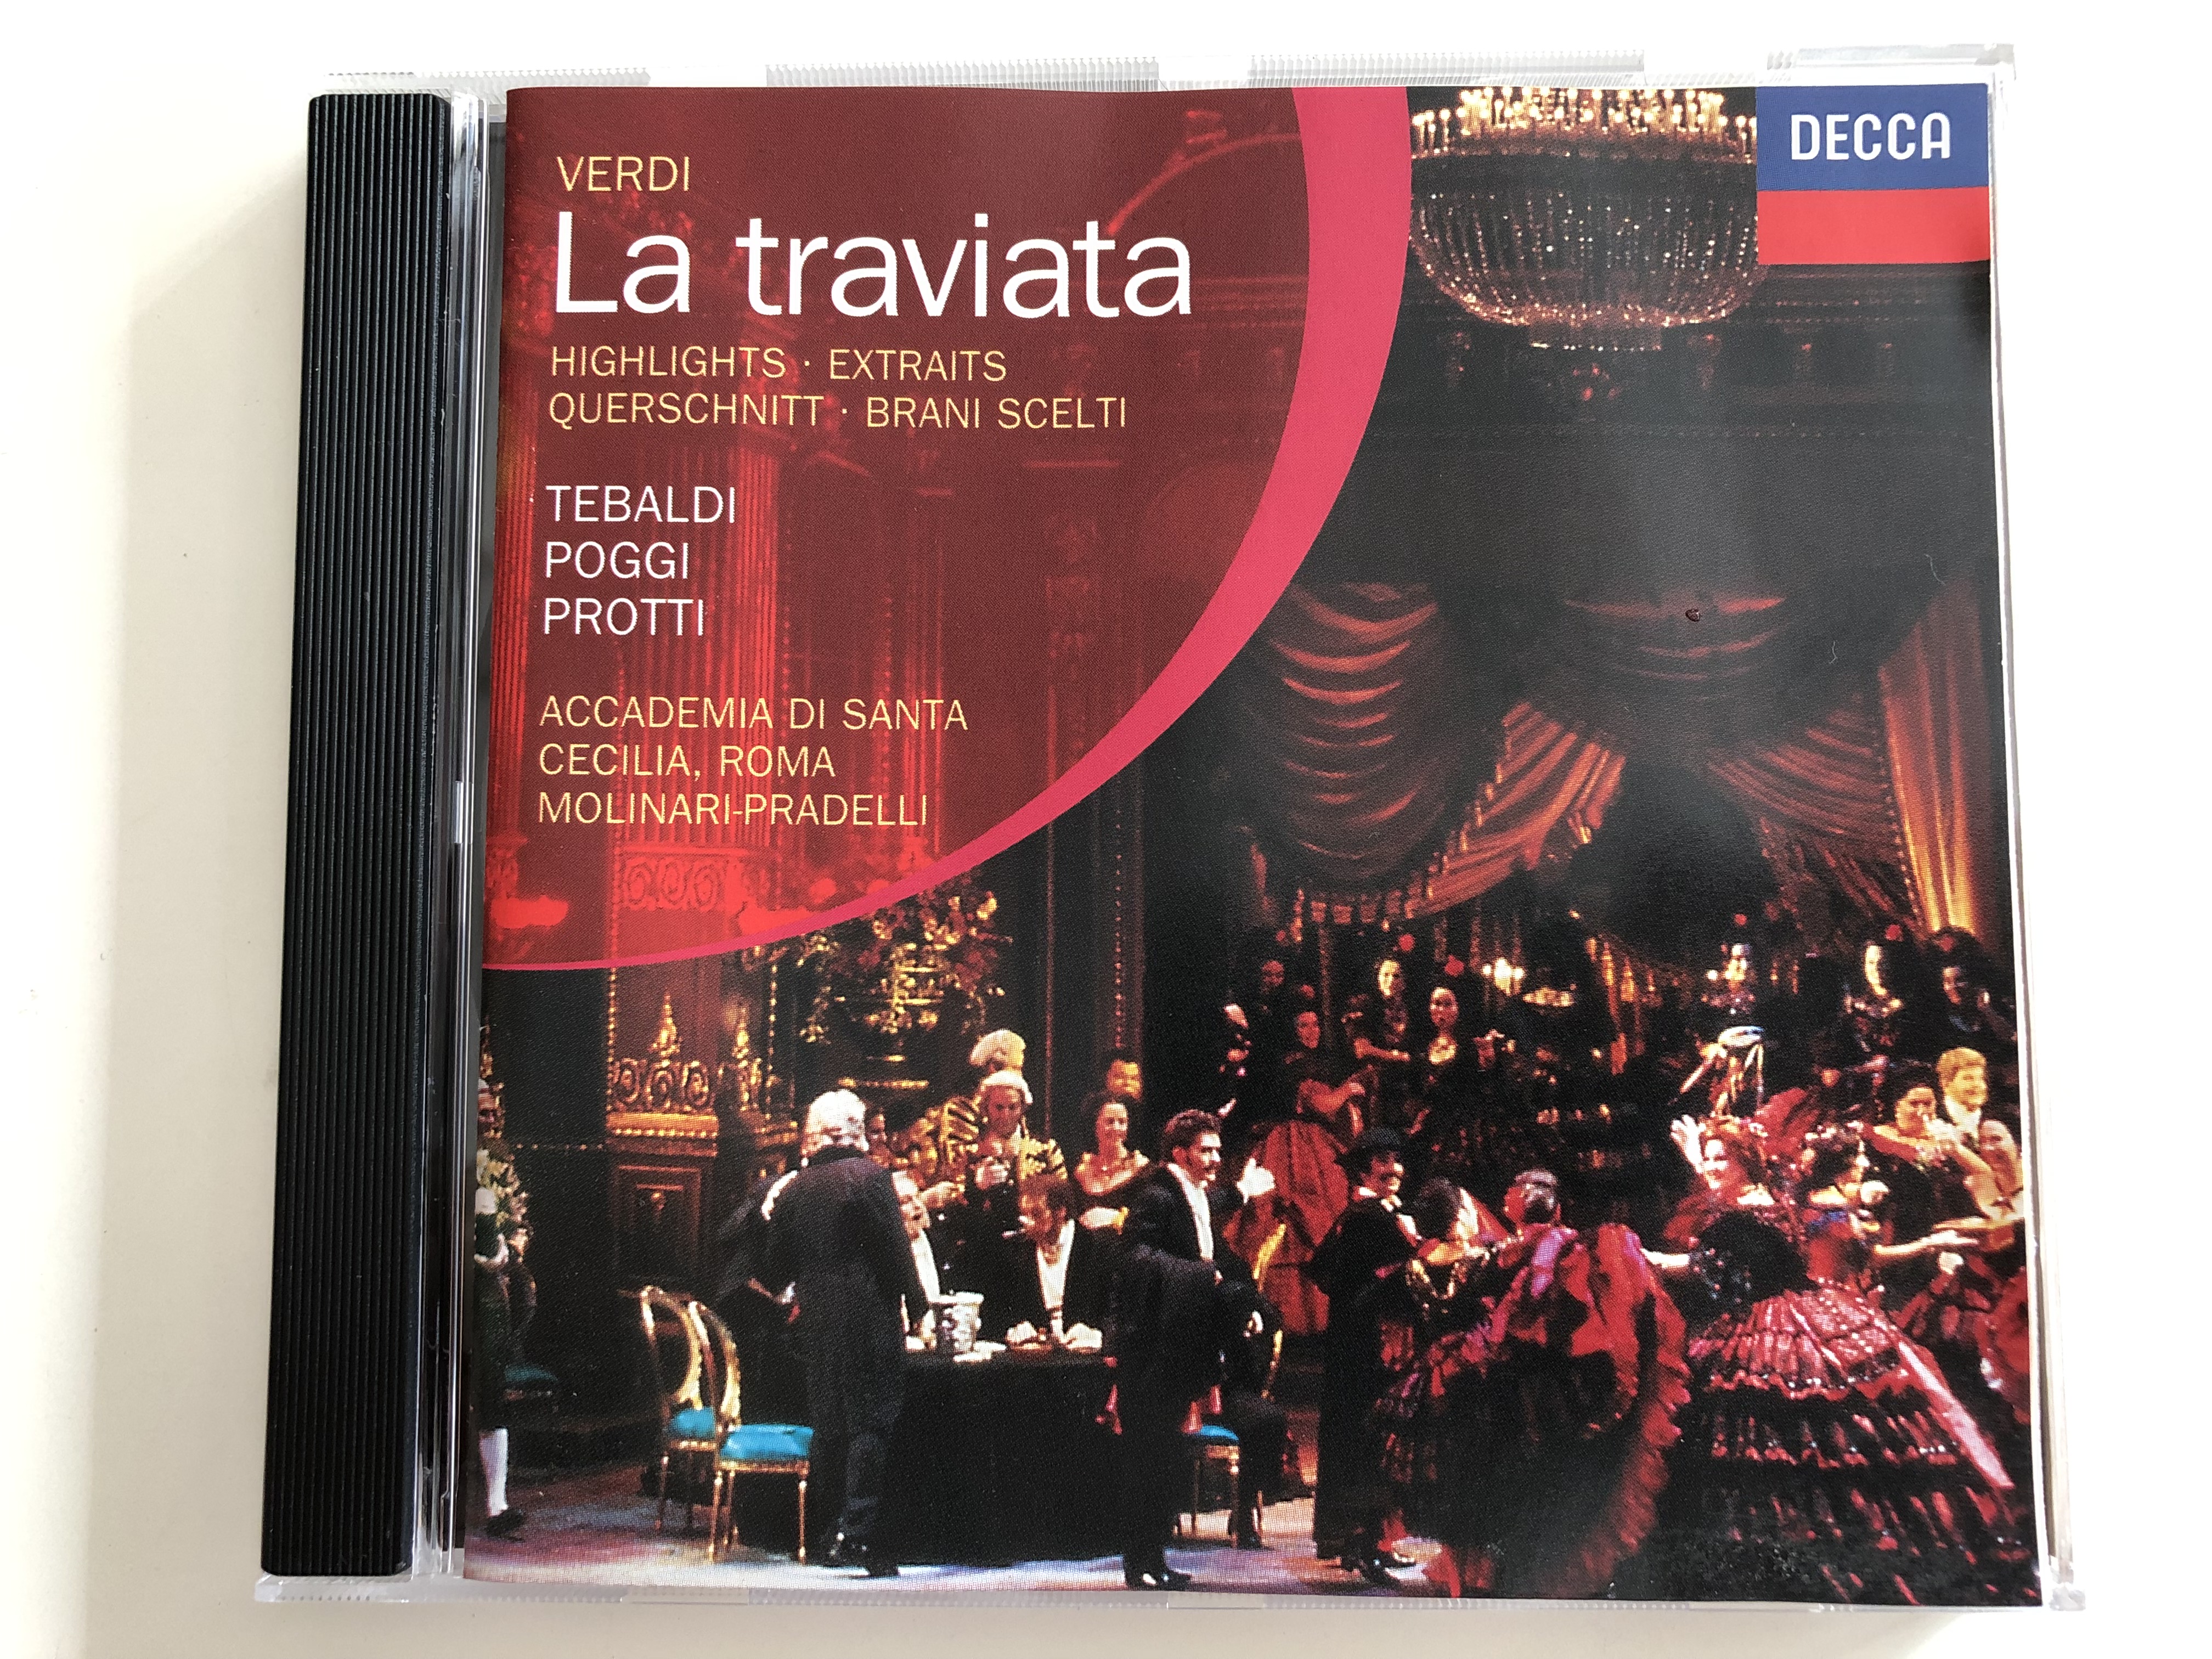 verdi-la-traviata-highlights-extraits-querschnitt-brani-scelti-tebaldi-poggi-protti-accademia-di-santa-cecilia-roma-conducted-by-francesco-molinari-pradelli-decca-audio-cd-1997-452-734-2-py-871-1-.jpg